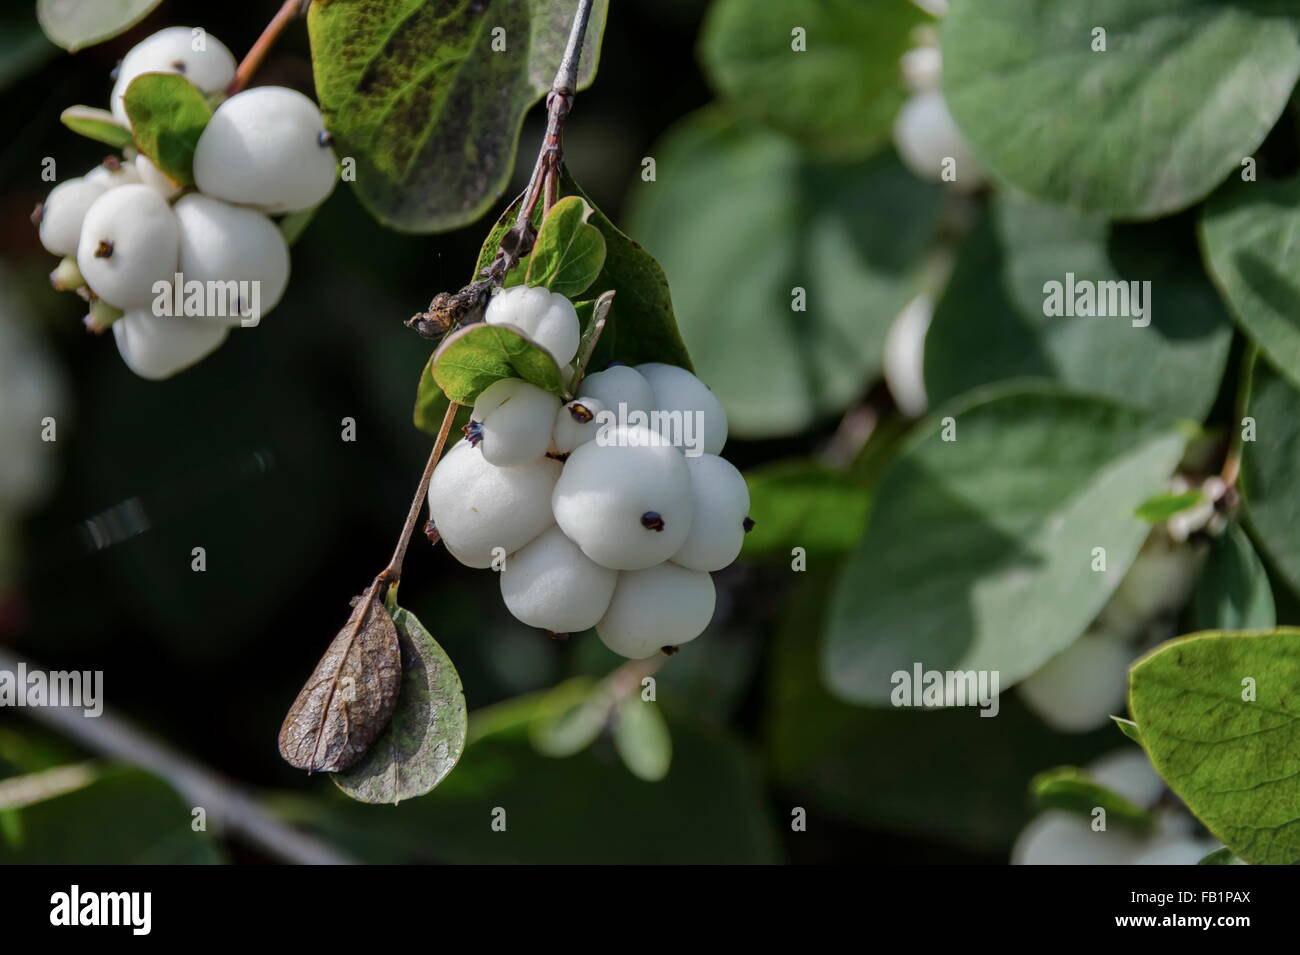 Snowberry albus shrub in park, Pancharevo, Bulgaria Stock Photo